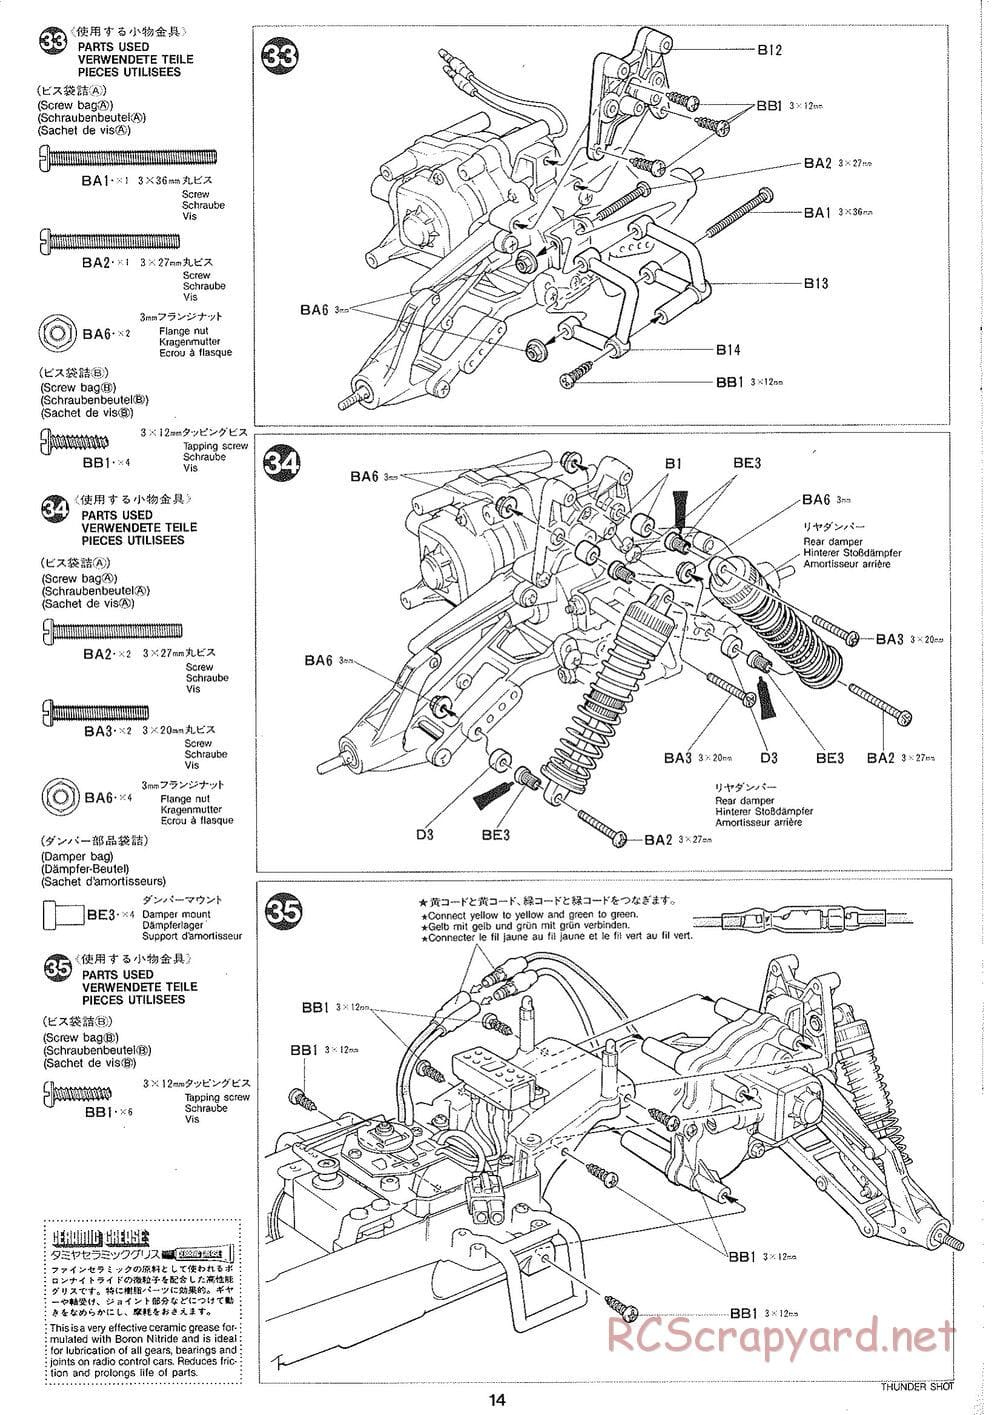 Tamiya - Thunder Shot - TS1 Chassis - Manual - Page 15